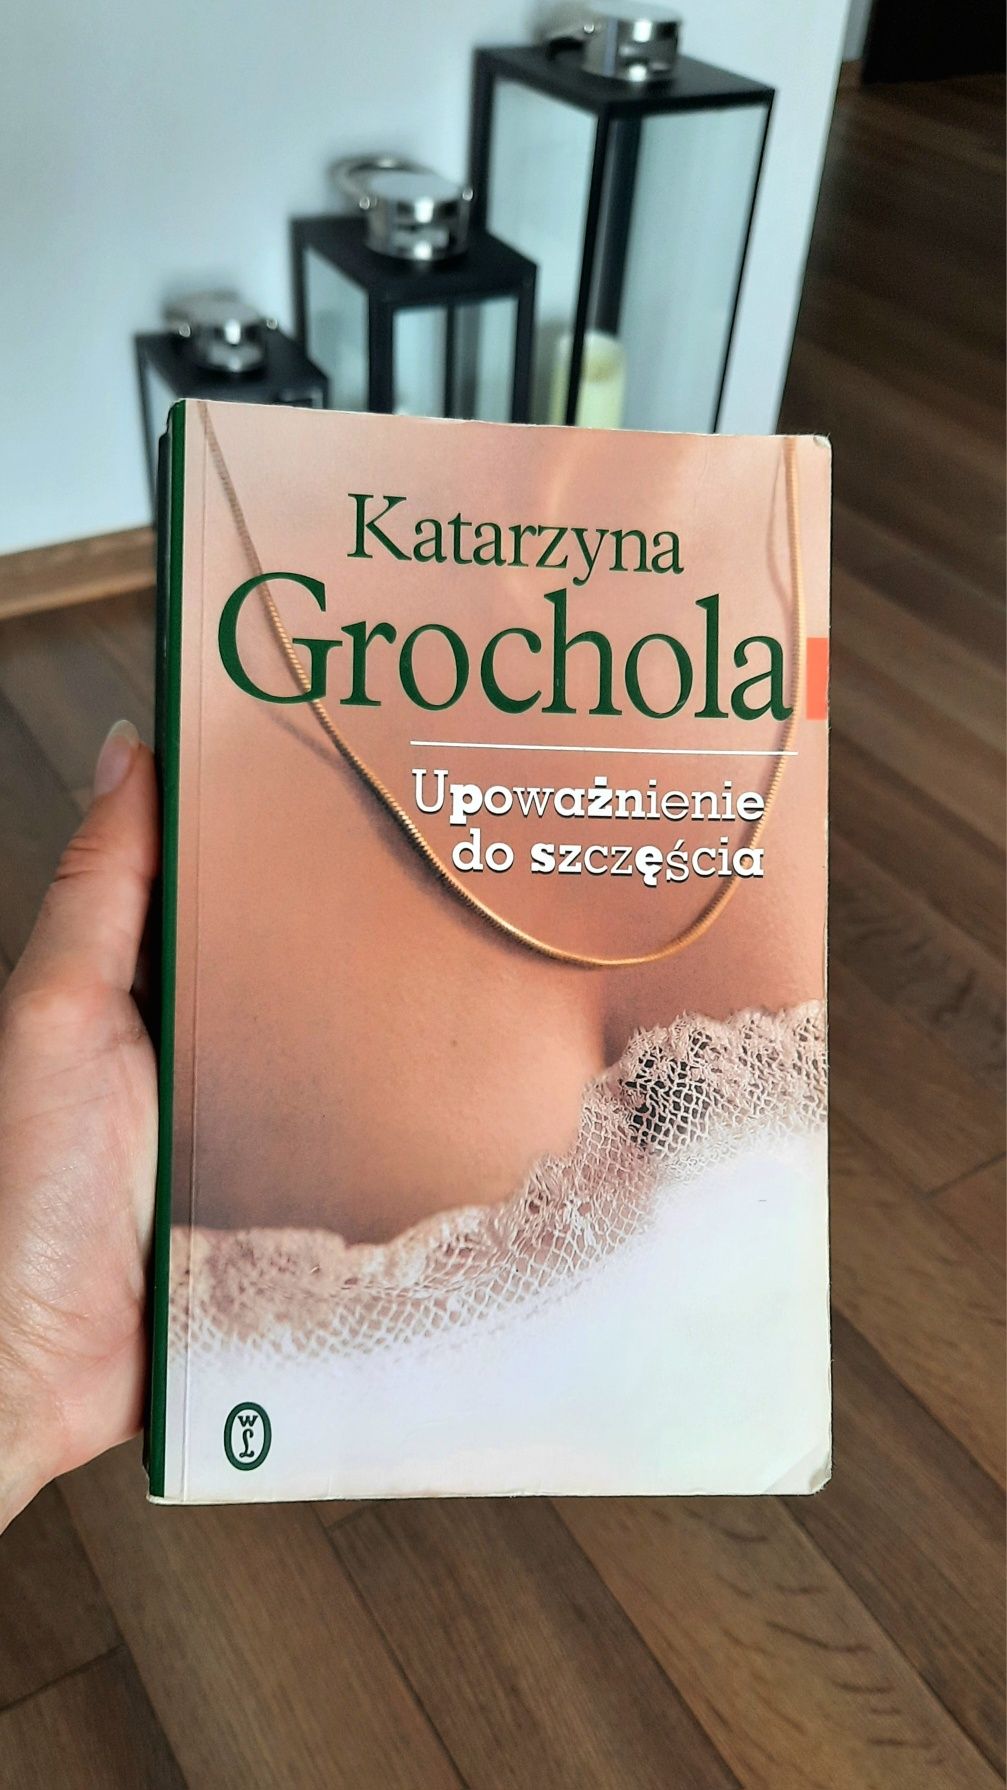 Książka Katarzyny Grocholi "Upoważnienie do szczęścia "